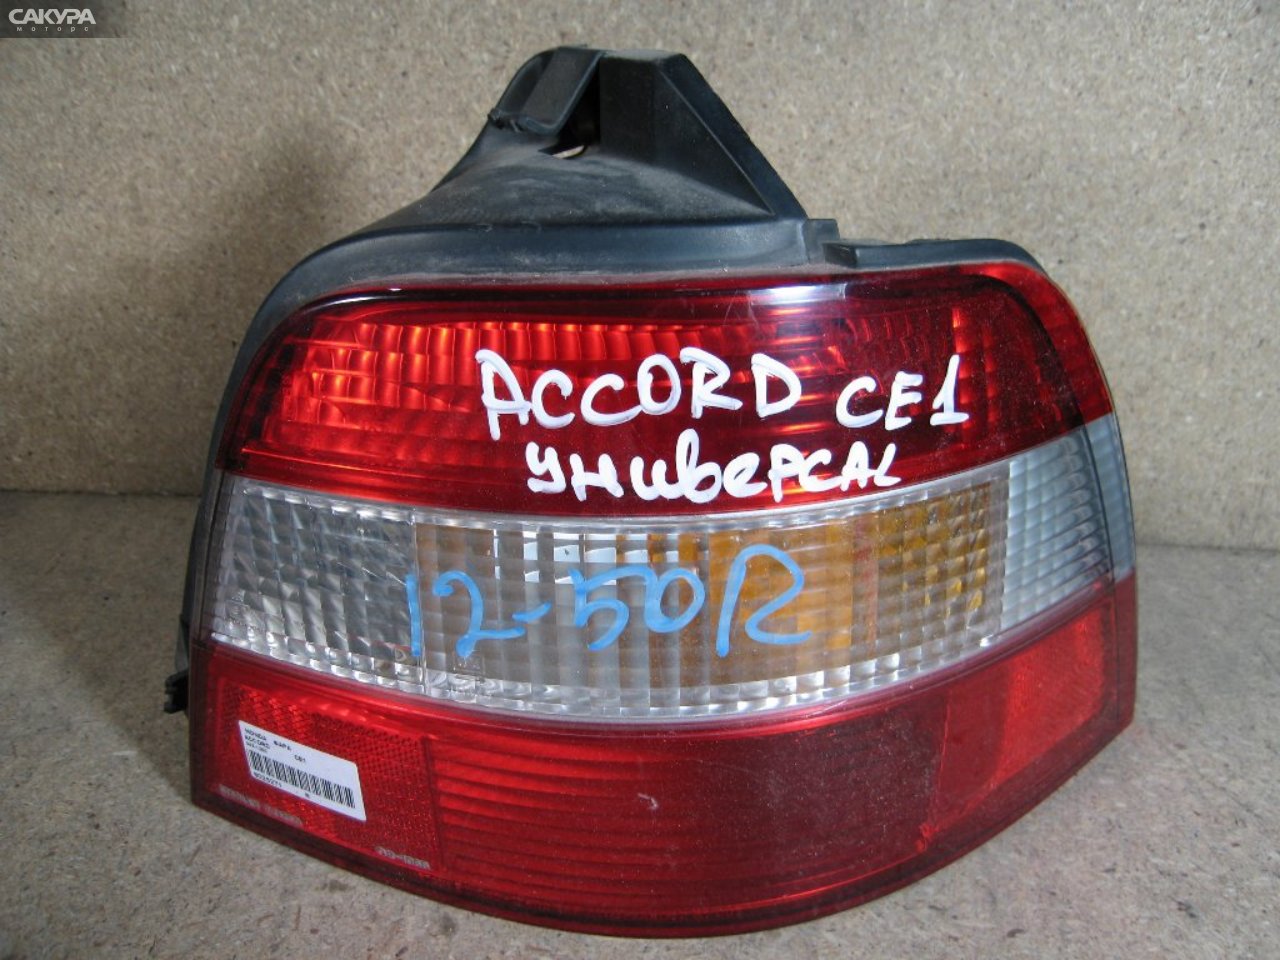 Фонарь стоп-сигнала правый Honda Accord Wagon CE1 043-1250: купить в Сакура Абакан.